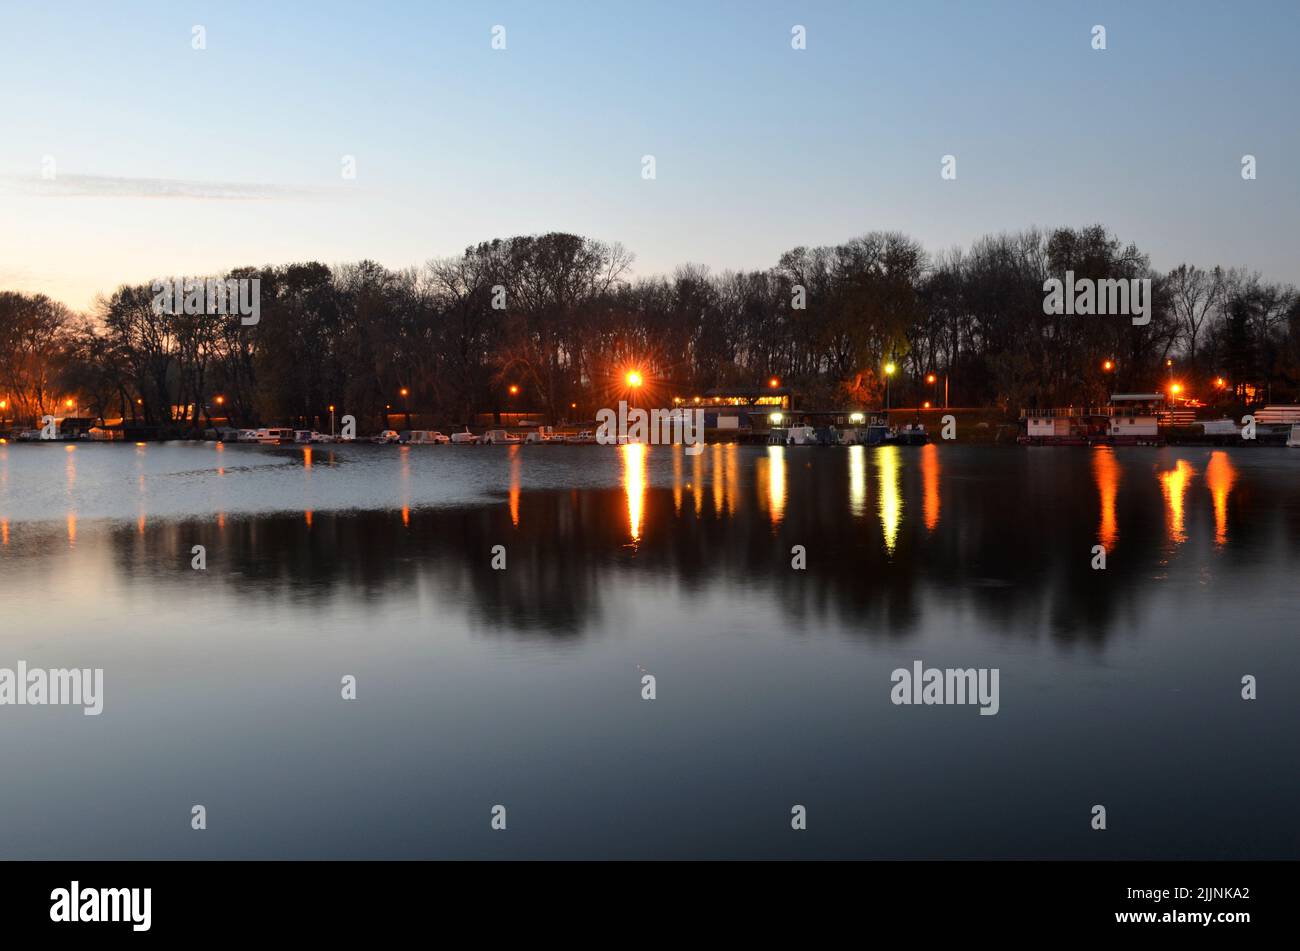 Un bel colpo di luci di strada e alberi riflessi su un lago Foto Stock